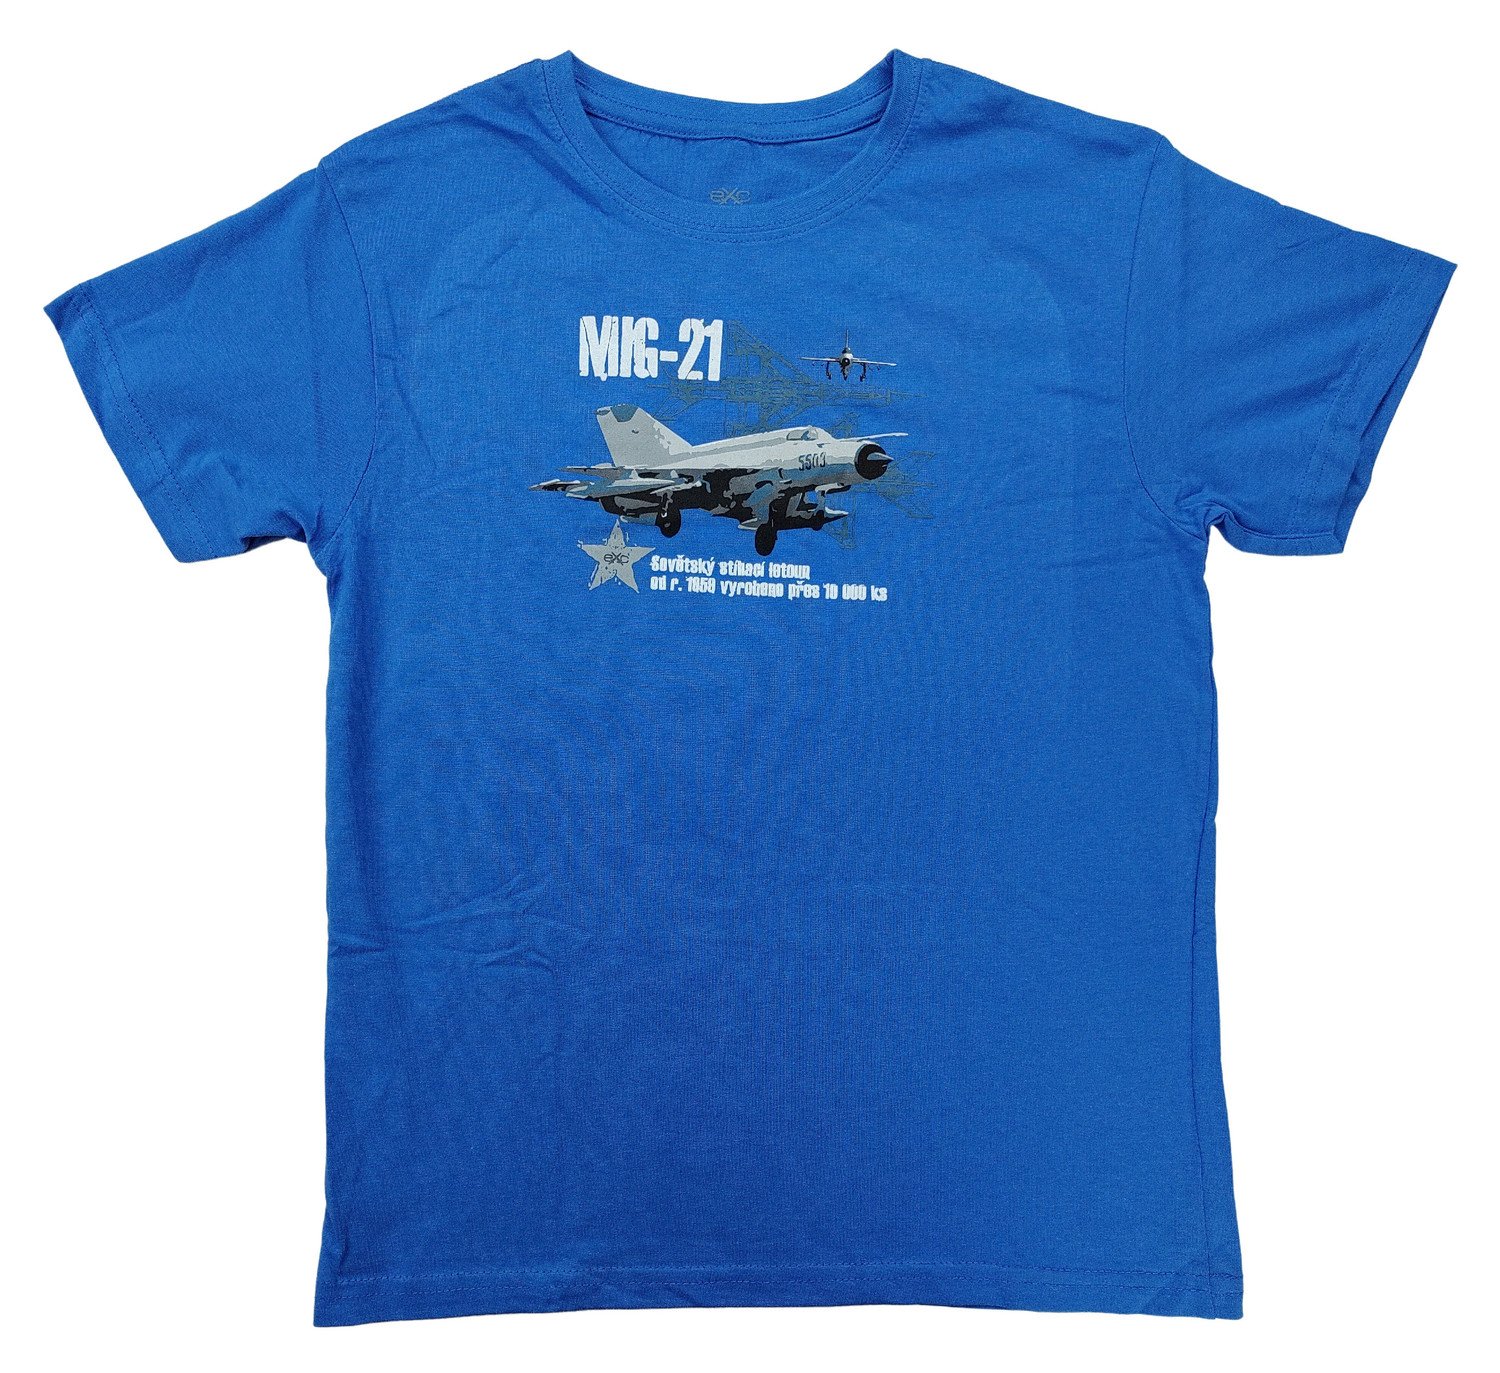 Triko dětské s potiskem MIG-21 sovětský stíhací letoun Mikojan-Gurevič modré EXC® Vyberte velikost: 146